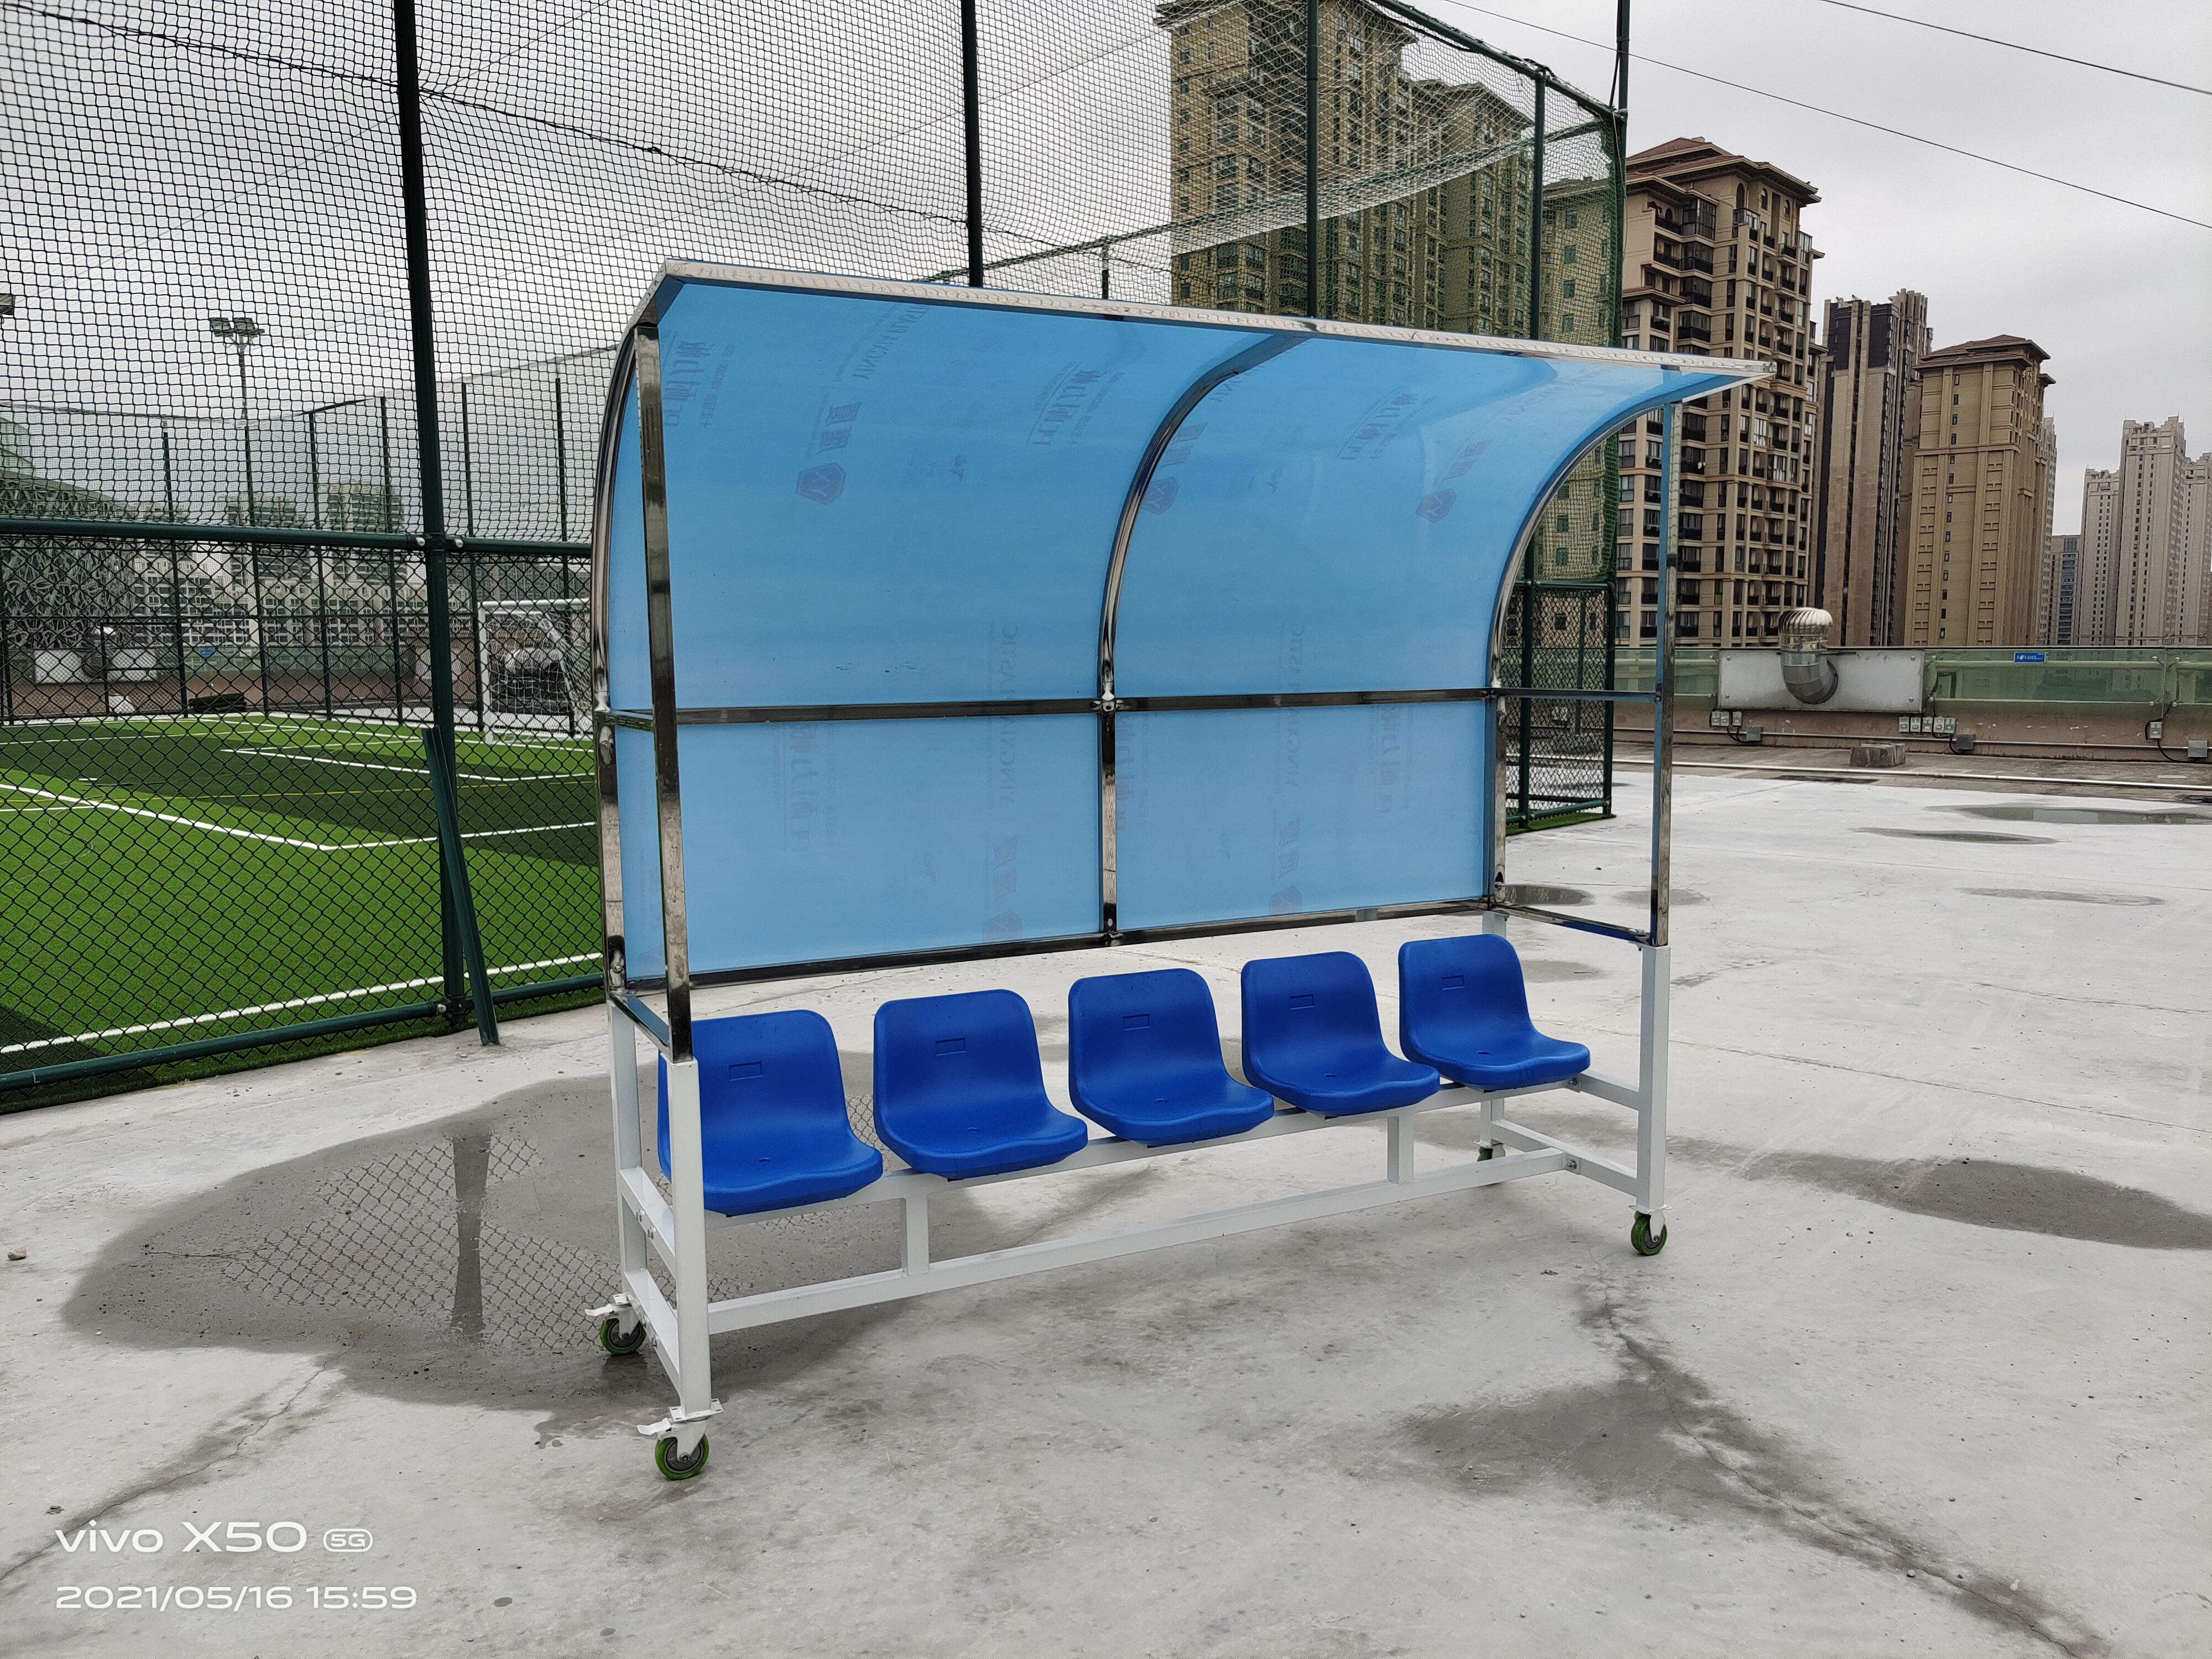 Soccer Shelter Outdoor Bleachers Steel Lightweight Soccer Football Team Shelter Player Benches Seats